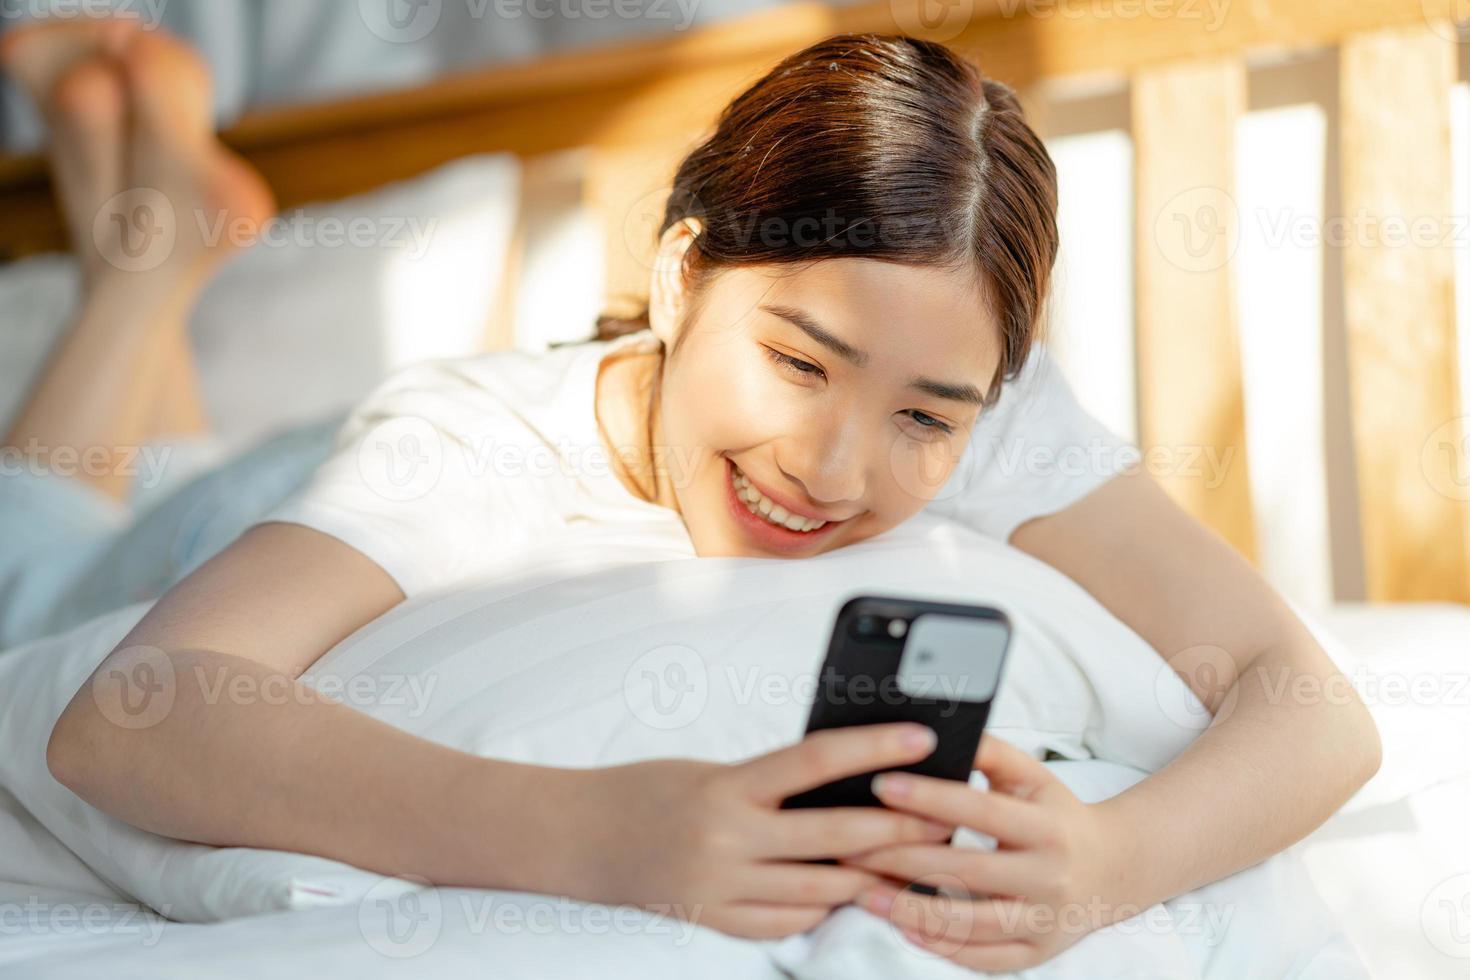 mooie aziatische vrouw die haar telefoon gebruikt als ze net wakker wordt foto